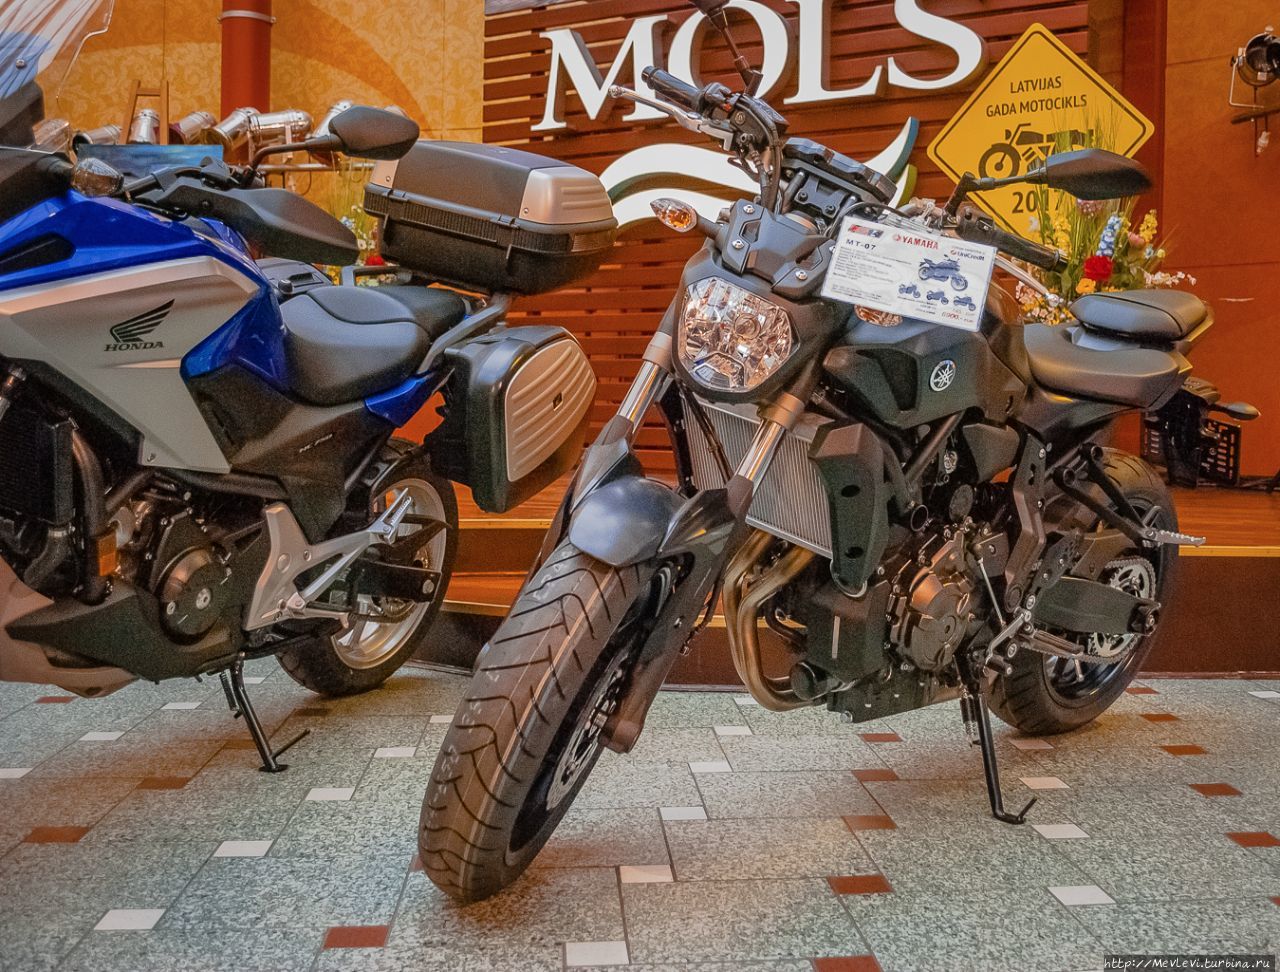 Выставка “Мотоцикл года в Латвии 2017” Рига, Латвия